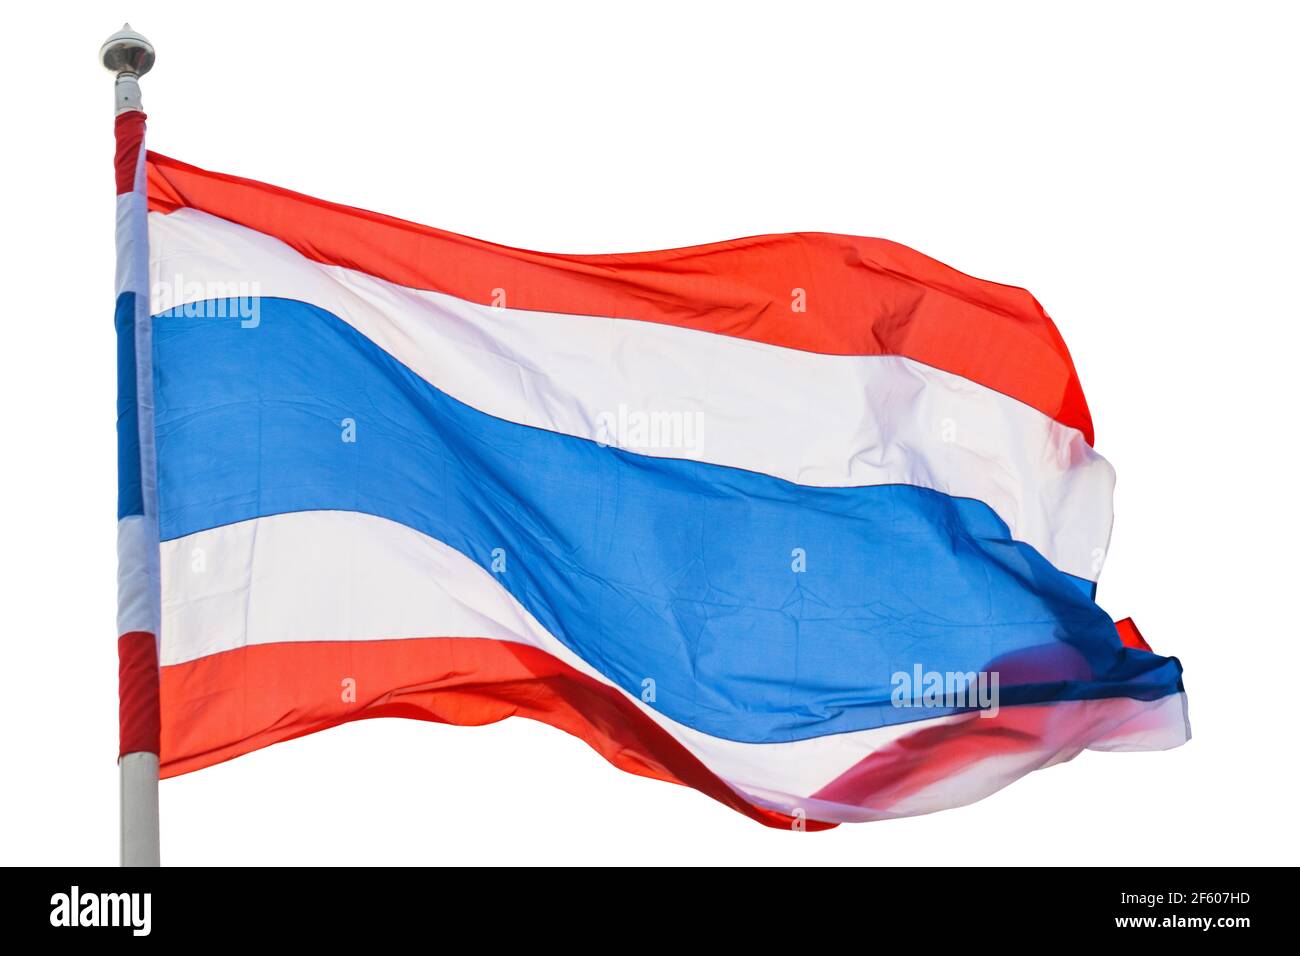 Die Flagge Thailands mit 3 Farben rot, weiß, blau Stockfotografie - Alamy